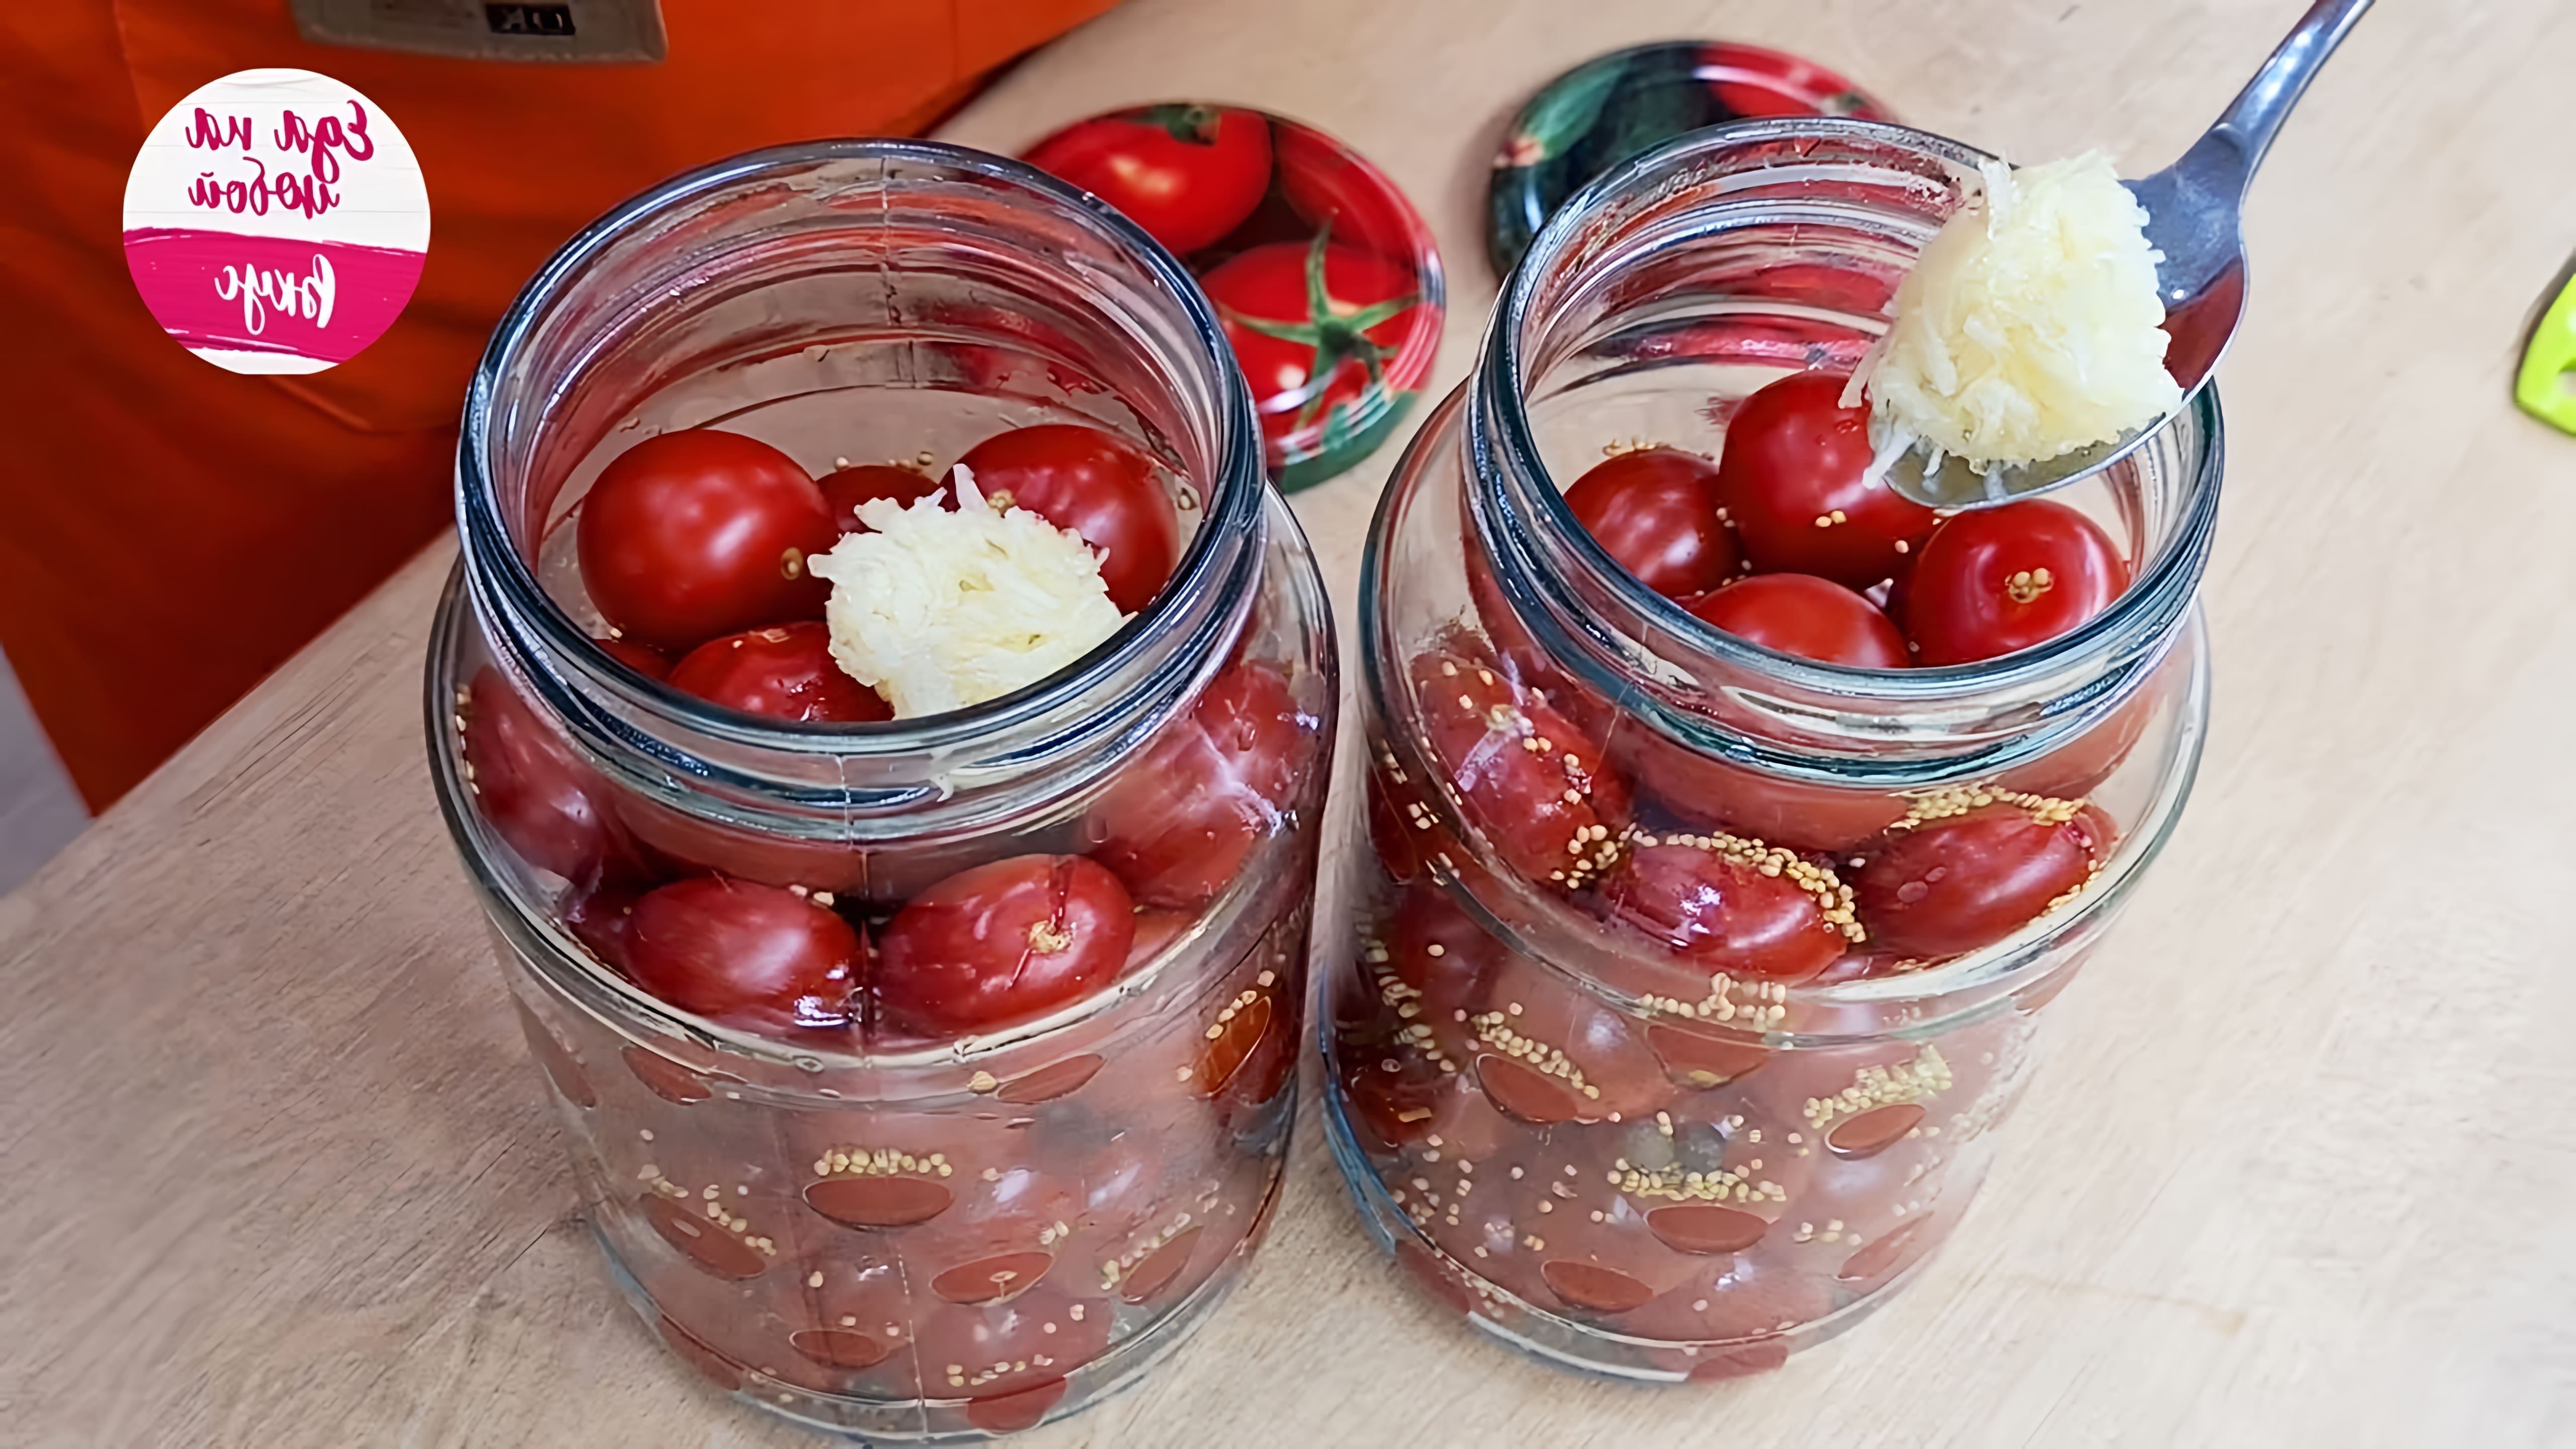 Видео рецепт консервирования помидоров с чесноком на зиму без стерилизации